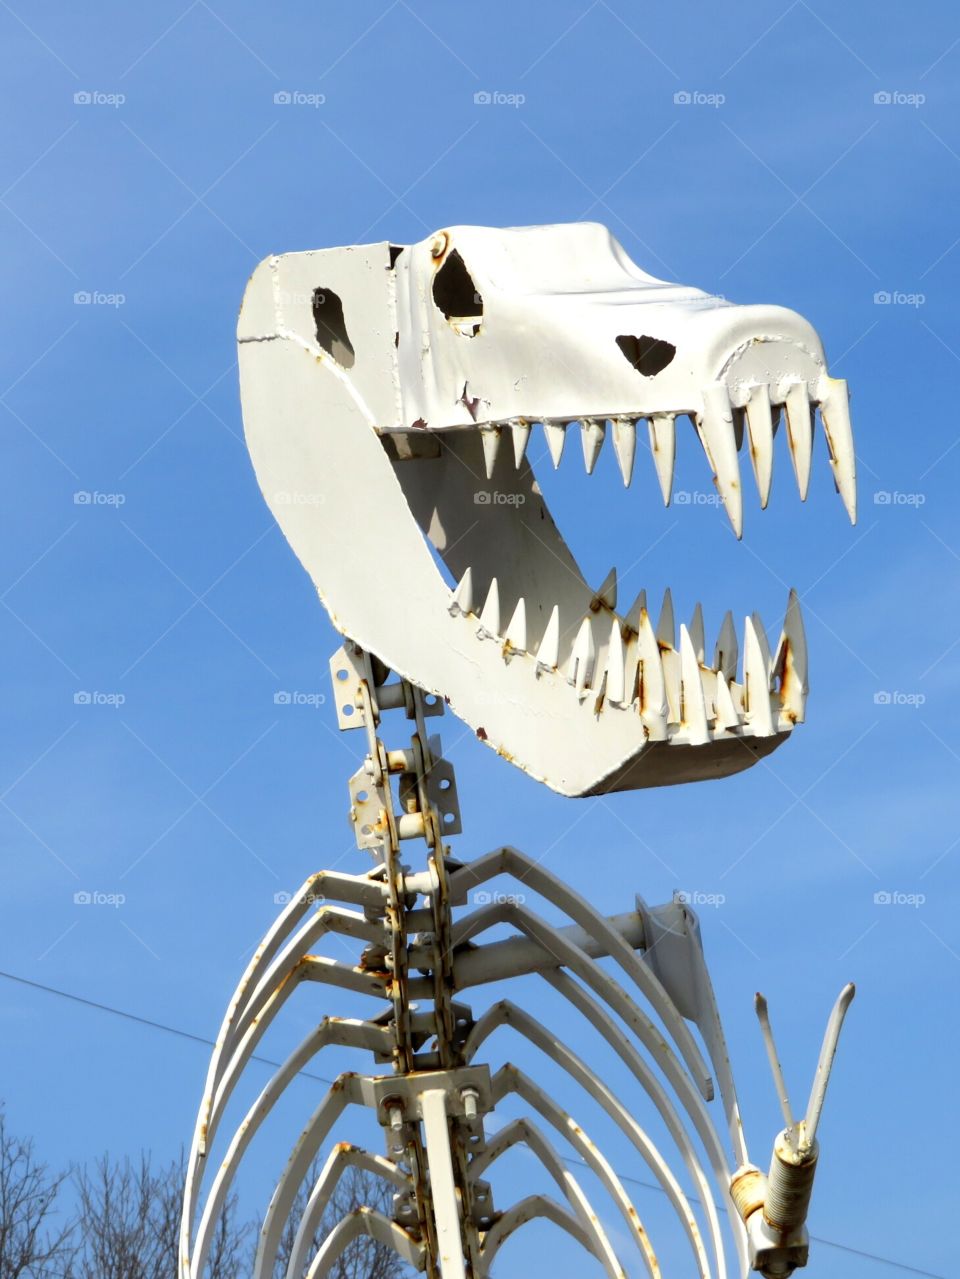 Tyrannosaurus Rex Figure